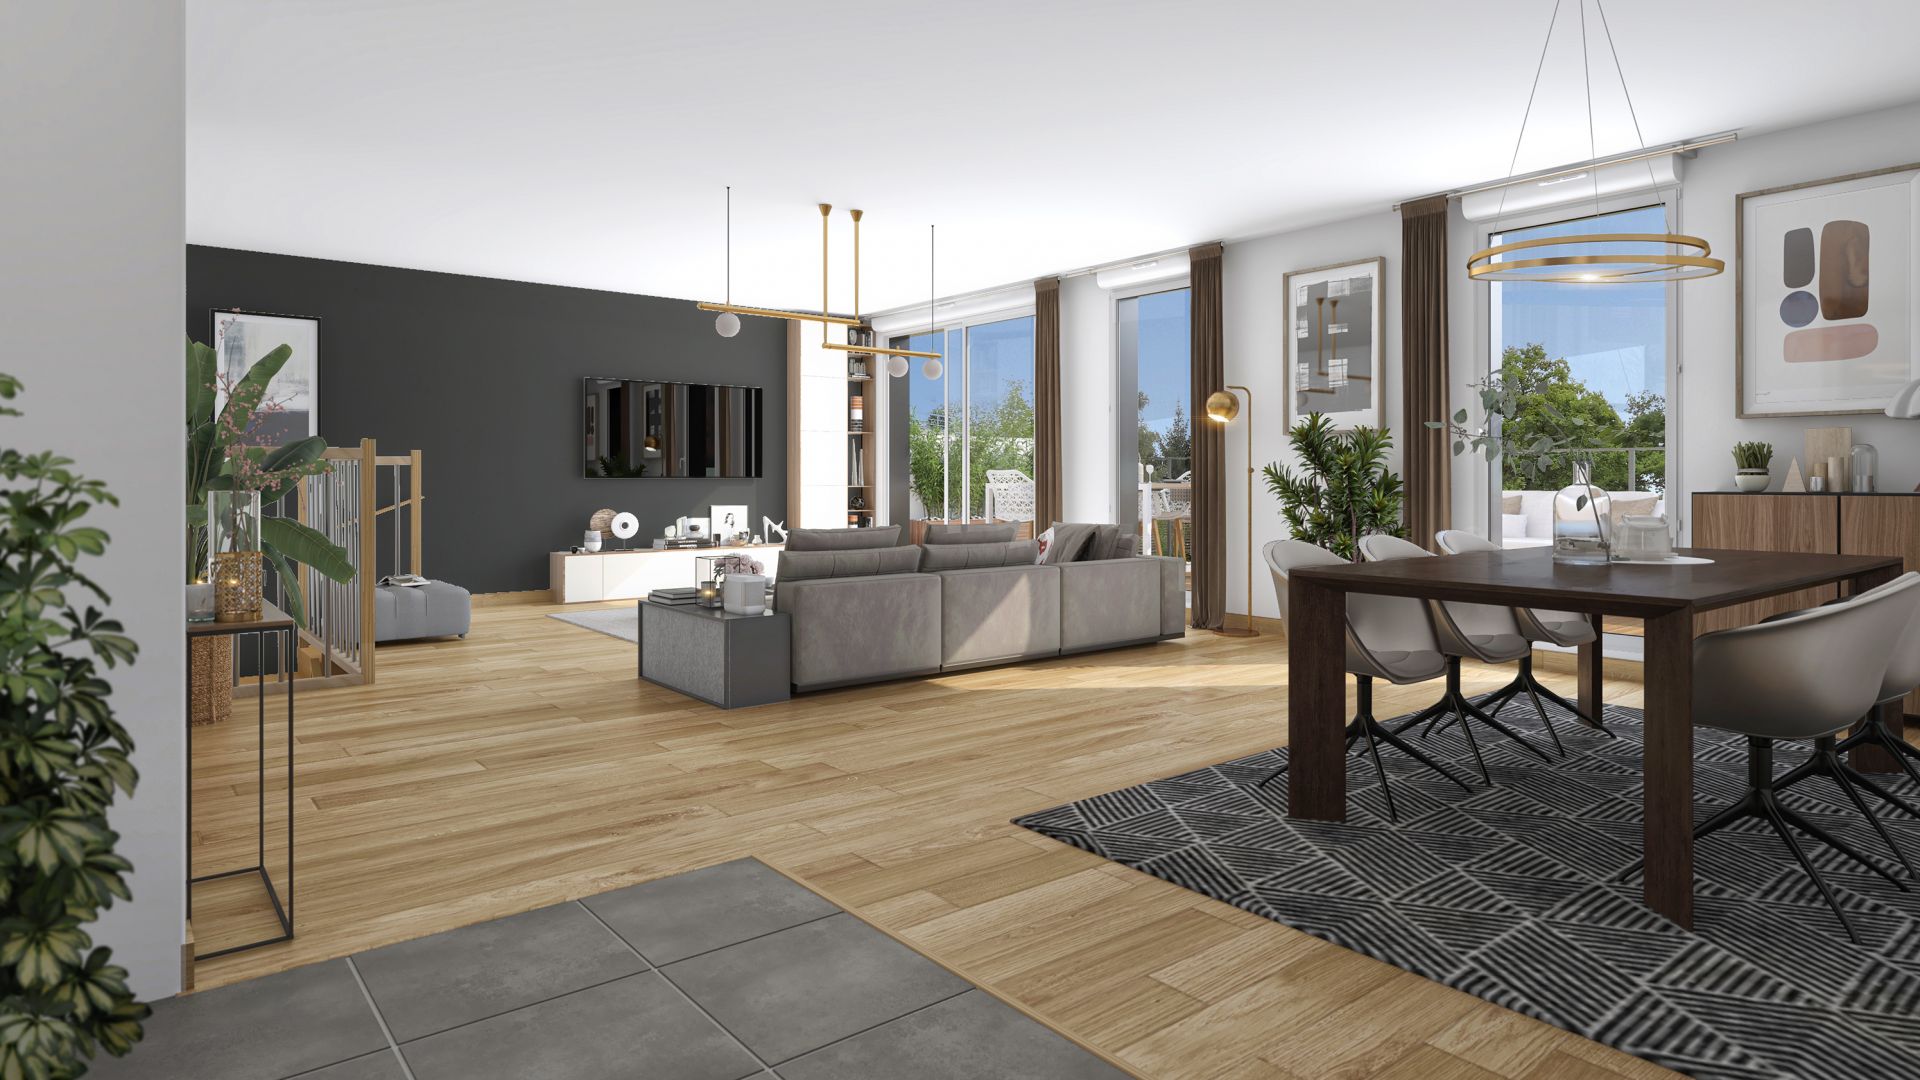 Greencity immobilier - achat appartements neufs du T2 au T4 Duplex - Résidence Solaris - 31400 Toulouse  